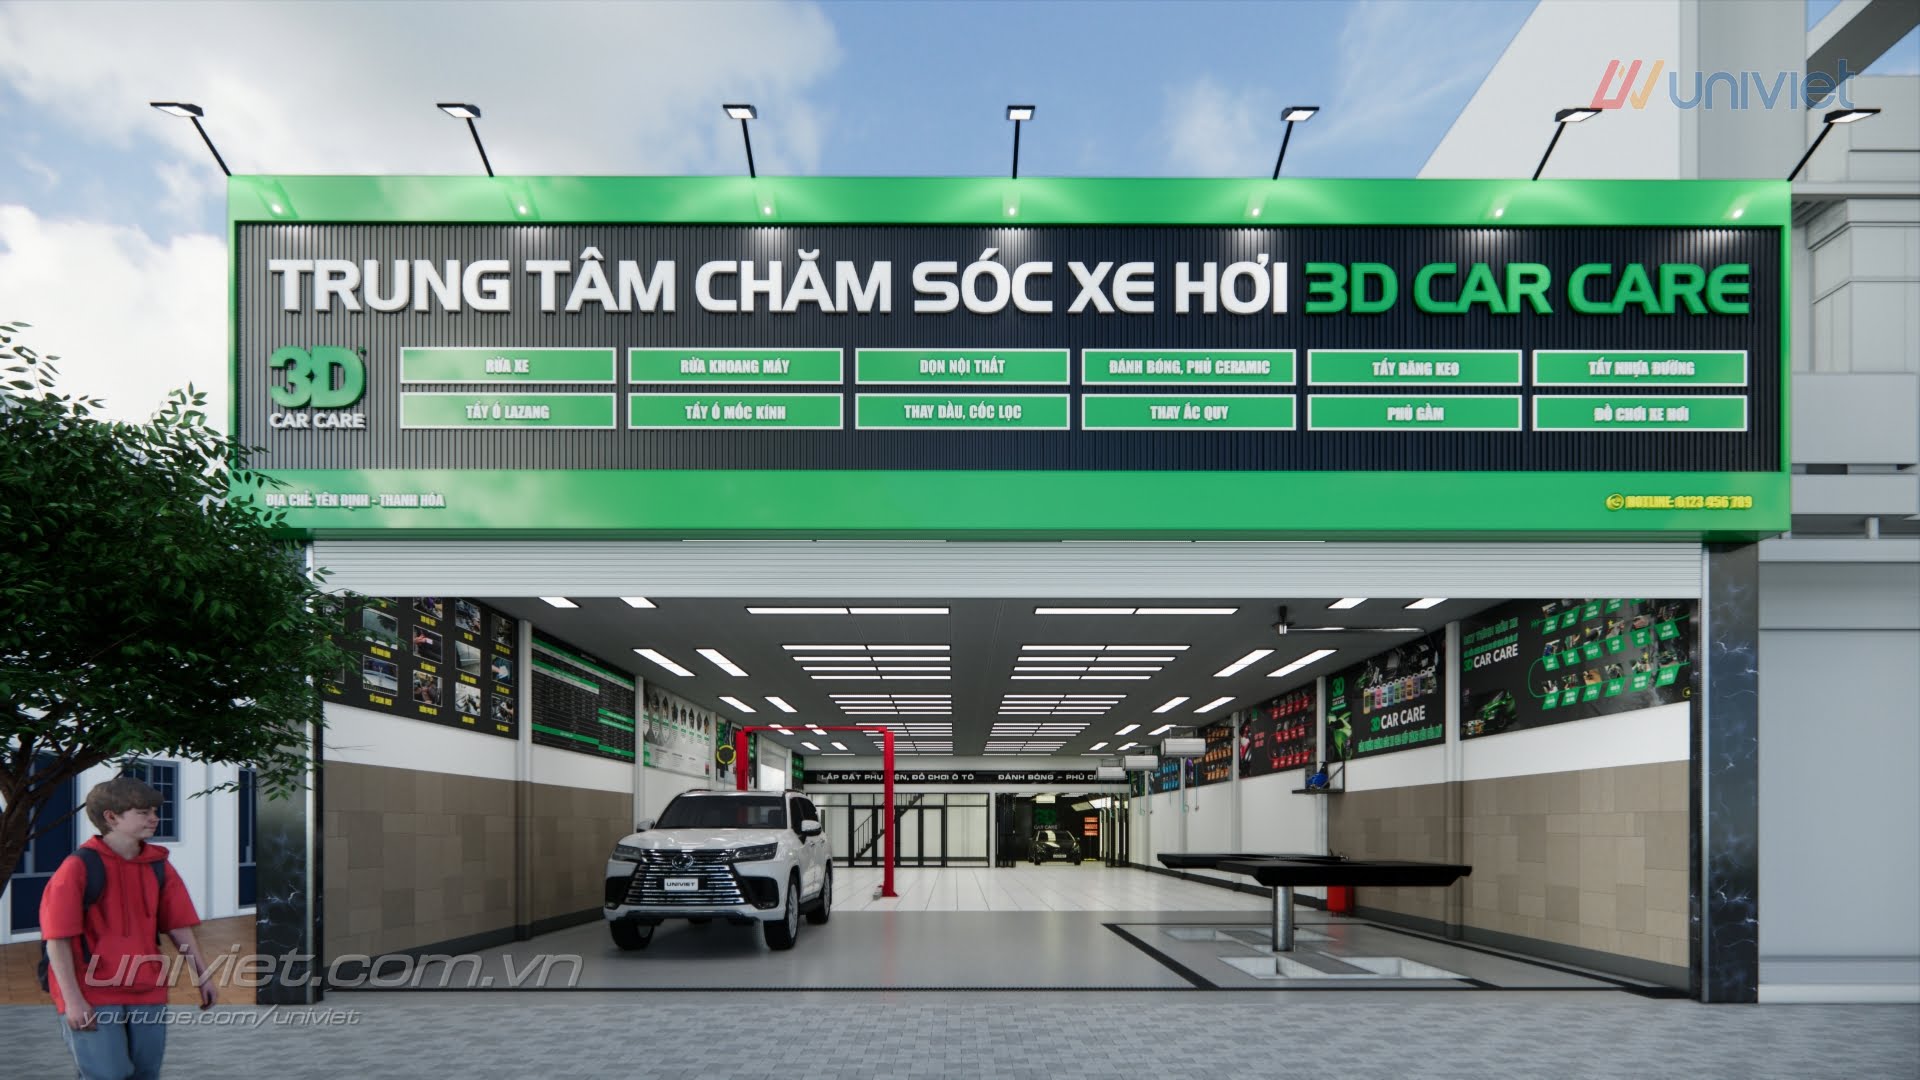 Mô hình 3D Trung tâm chăm sóc xe hơi chuyên nghiệp tại Thanh Hóa